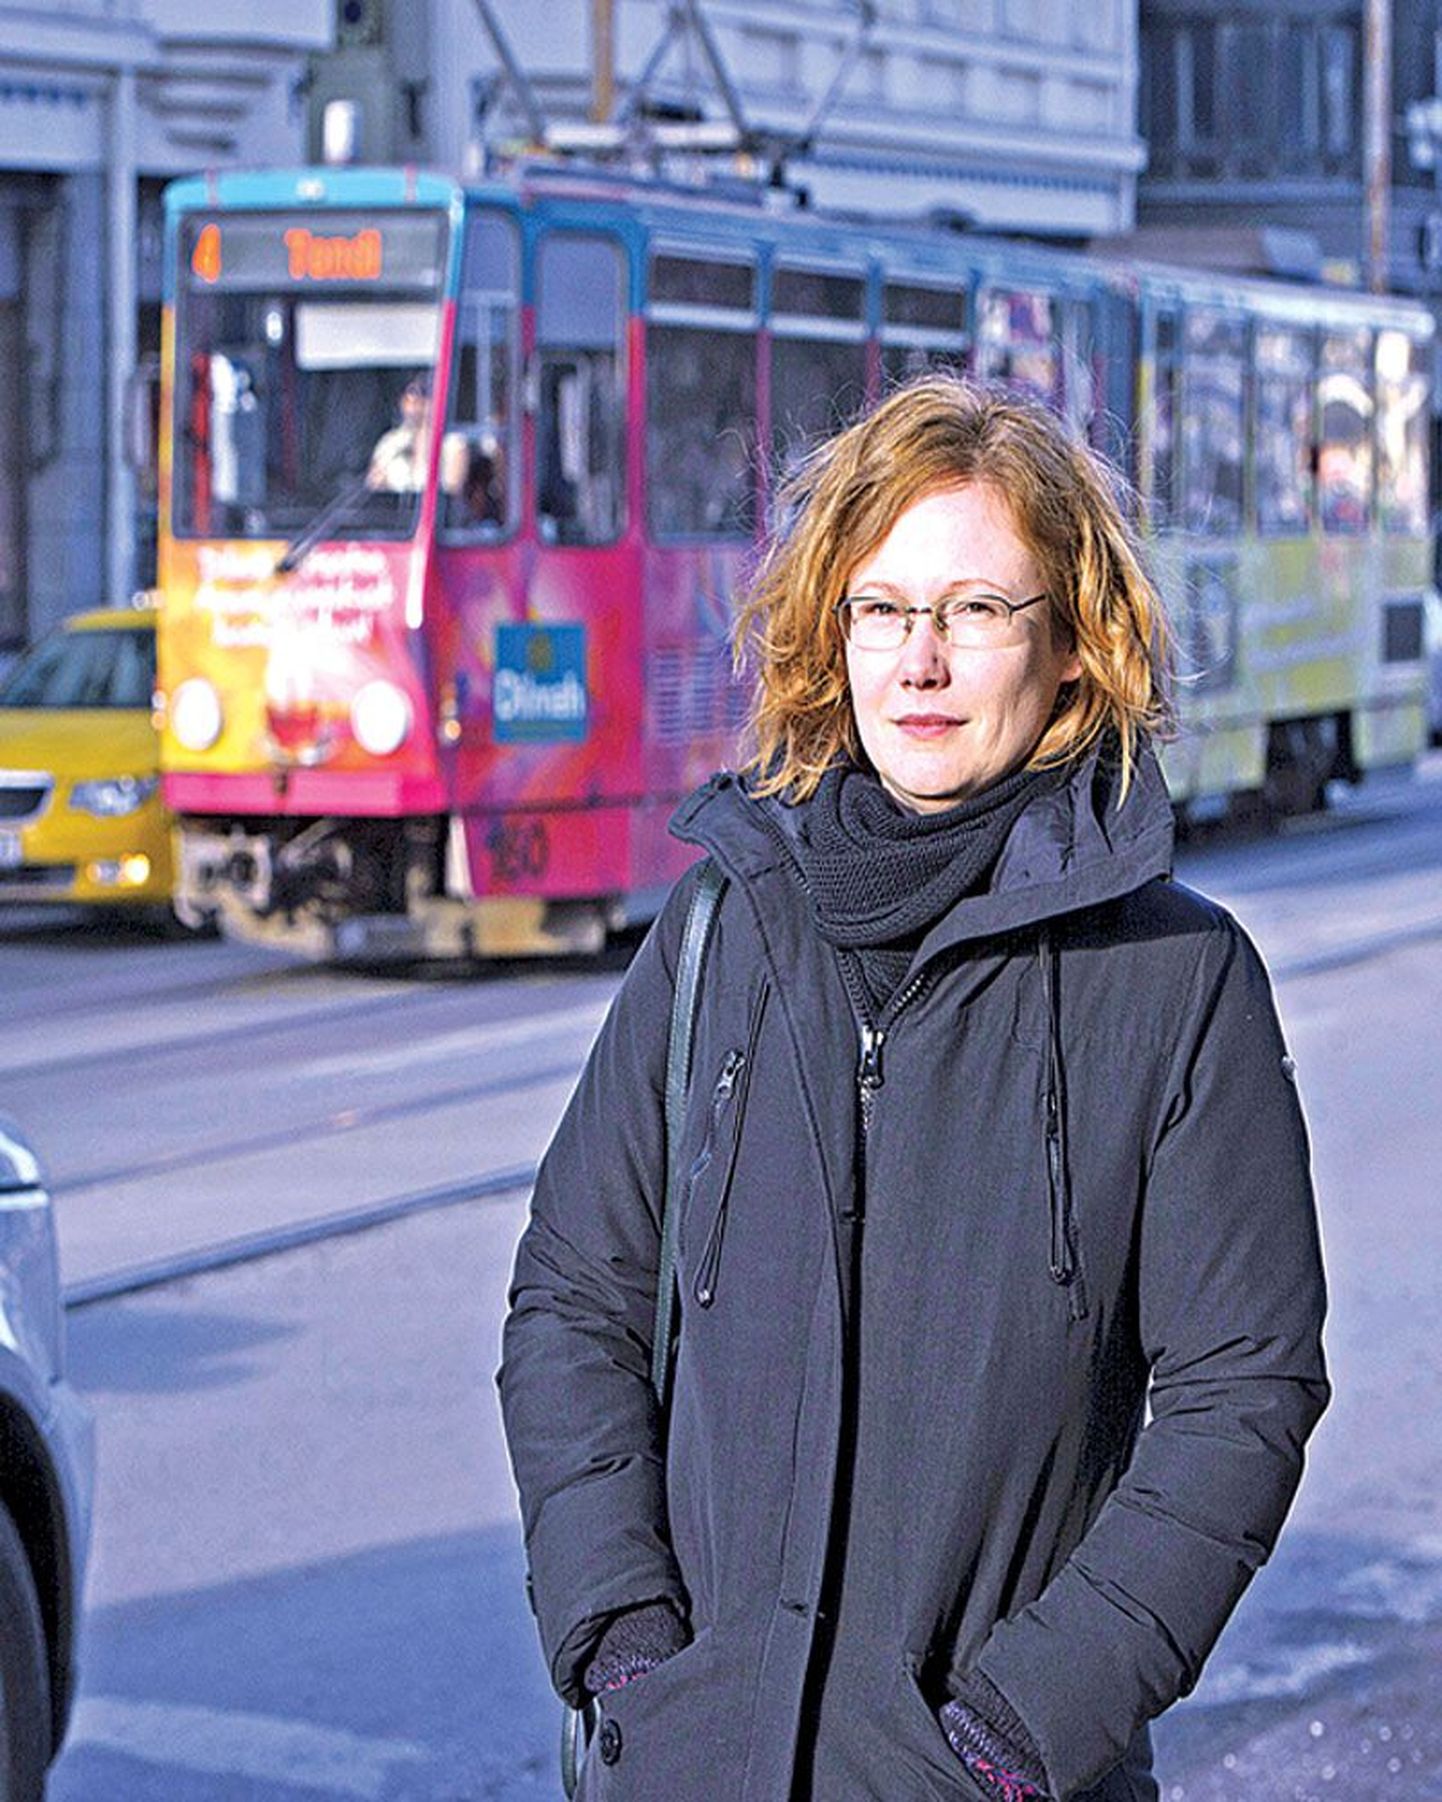 Maрии-Kристине Соомре угрожал штраф за безбилетный проезд в трамвае, хотя она зарегистрировала карточку в валидаторе. Но женщине удалось отстоять свою правоту.